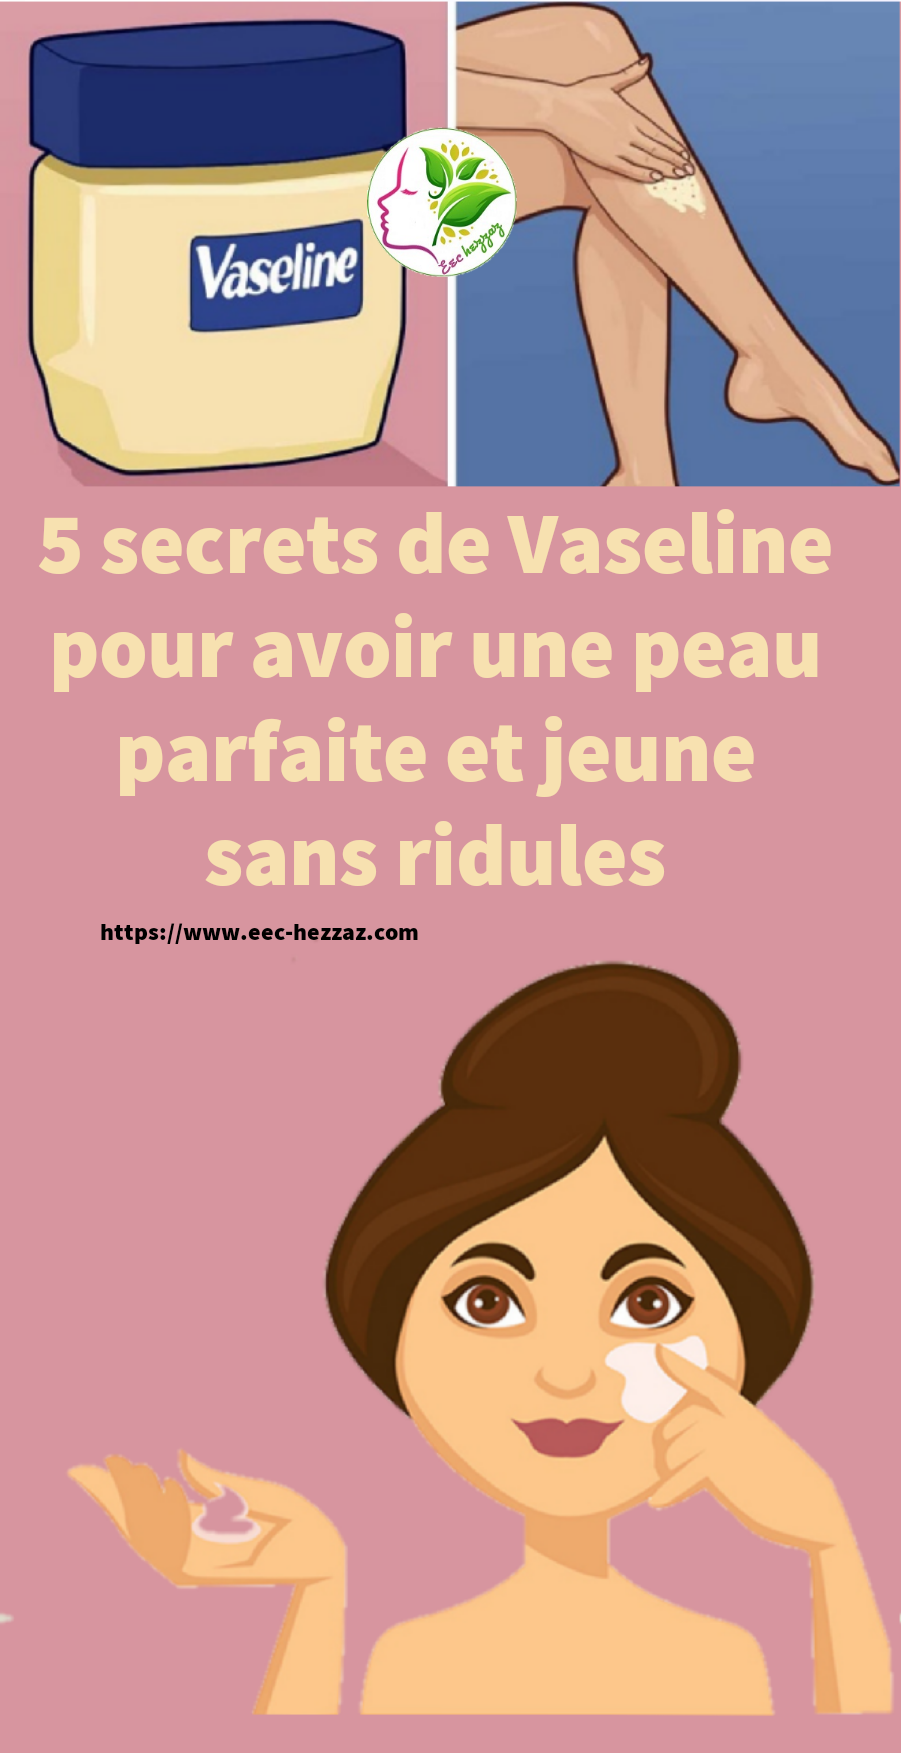 5 secrets de Vaseline pour avoir une peau parfaite et jeune sans ridules